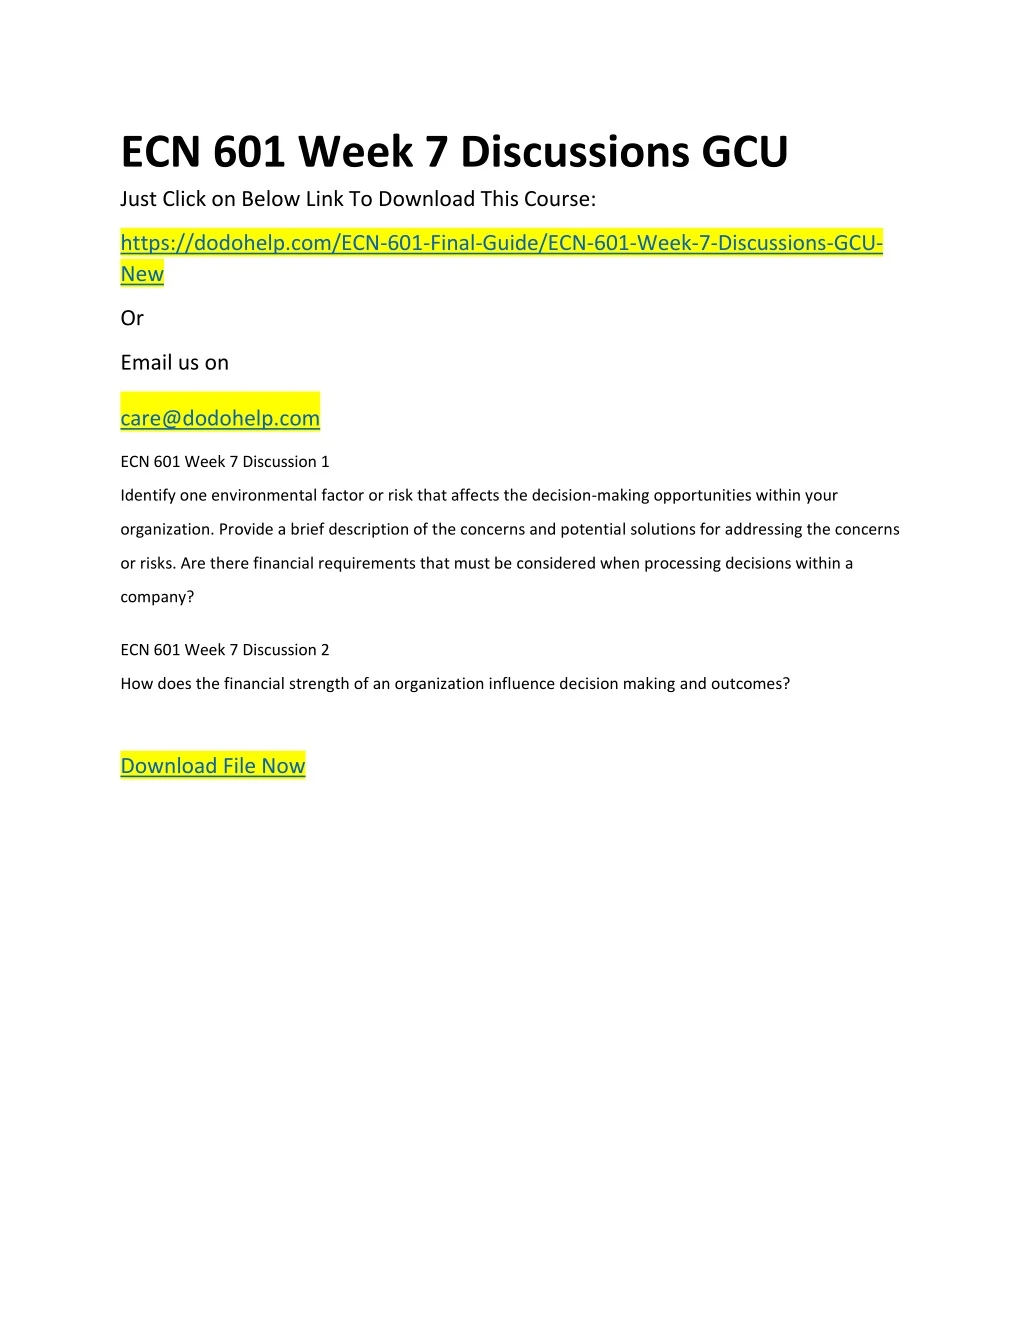 ecn 601 week 7 discussions gcu just click